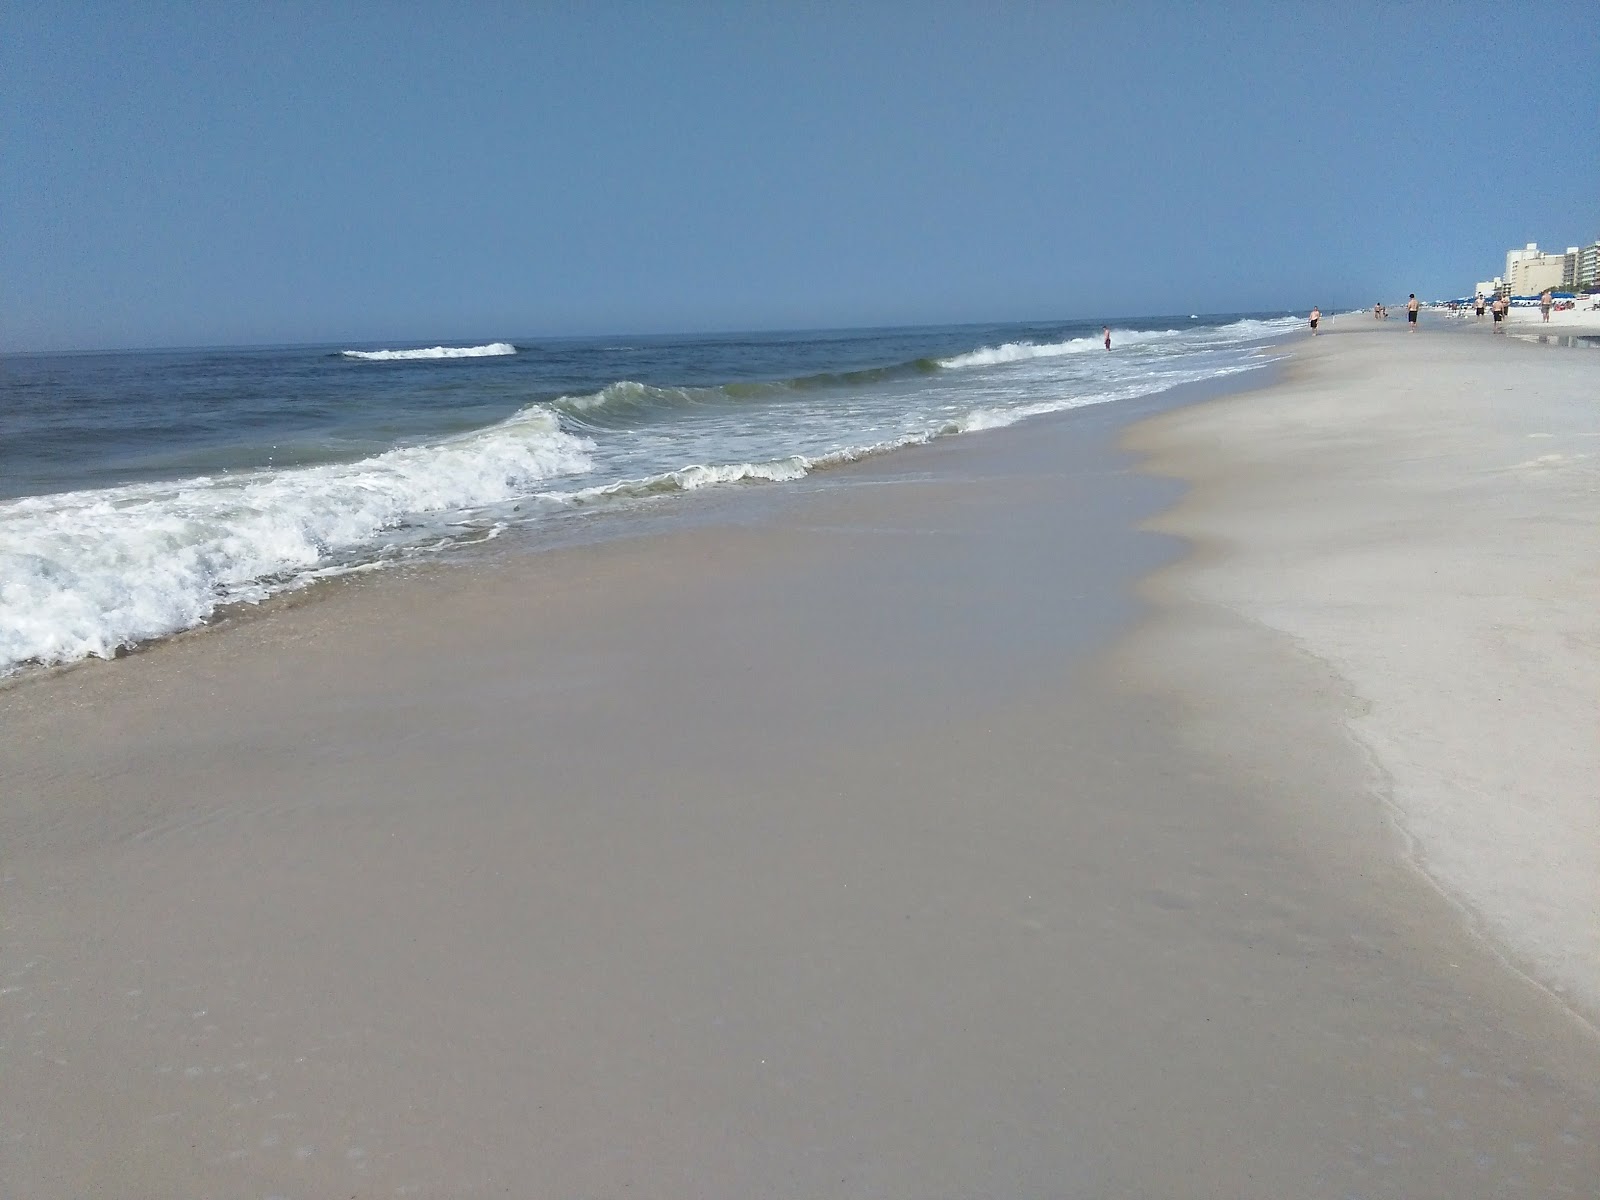 Gulf shores beach'in fotoğrafı - rahatlamayı sevenler arasında popüler bir yer